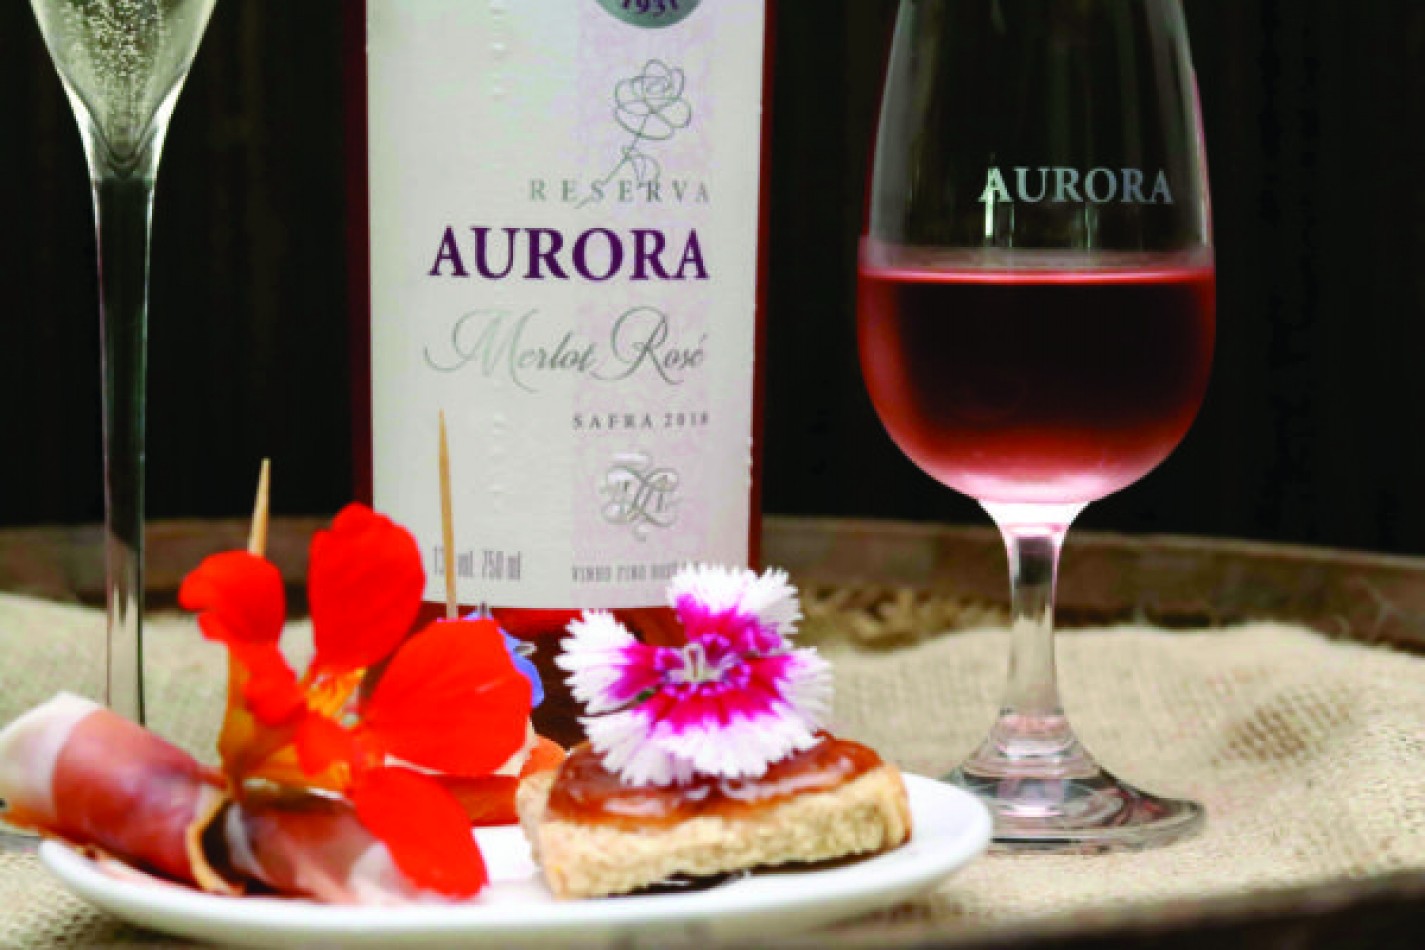 Nessa primavera, a Vinícola Aurora propõe um curso de degustação com uma harmonização inusitada de flores comestíveis e vinhos